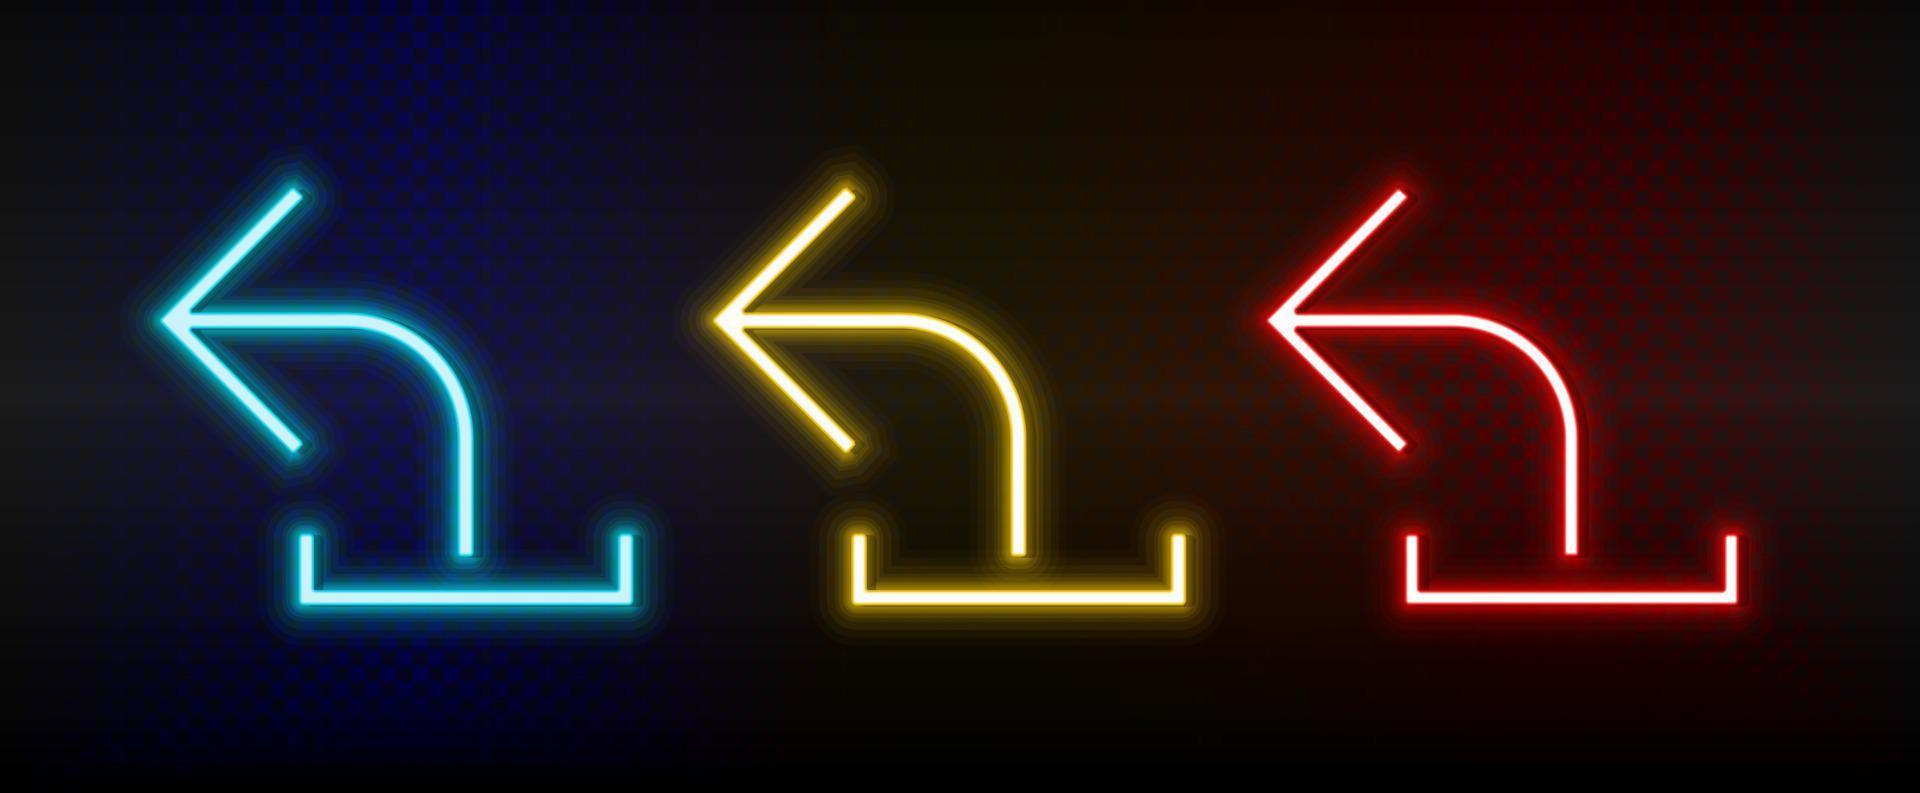 iconos de neón. flecha de interfaz de usuario conjunto de icono de vector de neón rojo, azul, amarillo sobre fondo oscuro